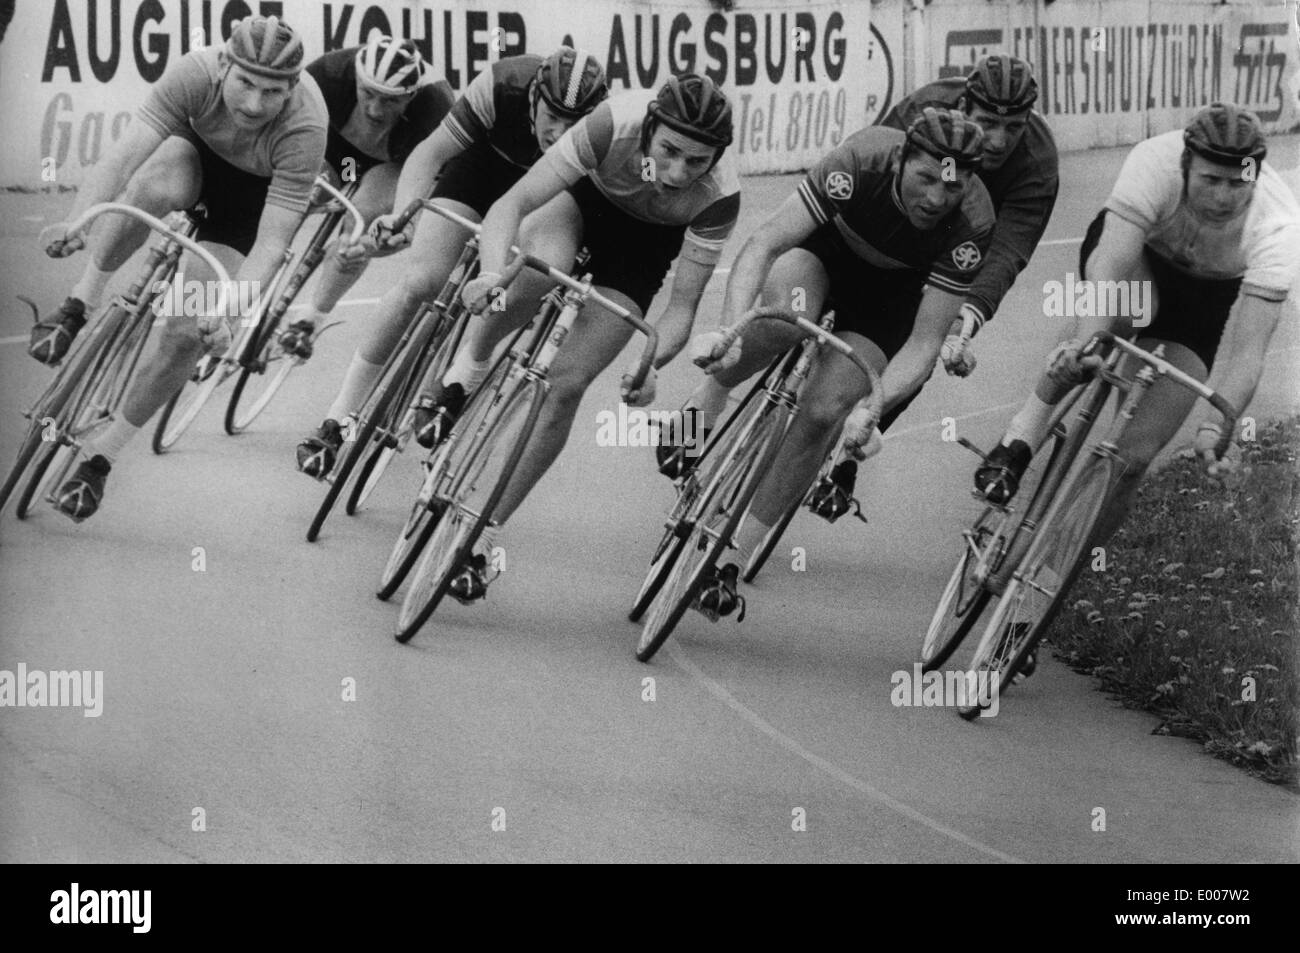 Ciclo racing in Augsburg Foto Stock